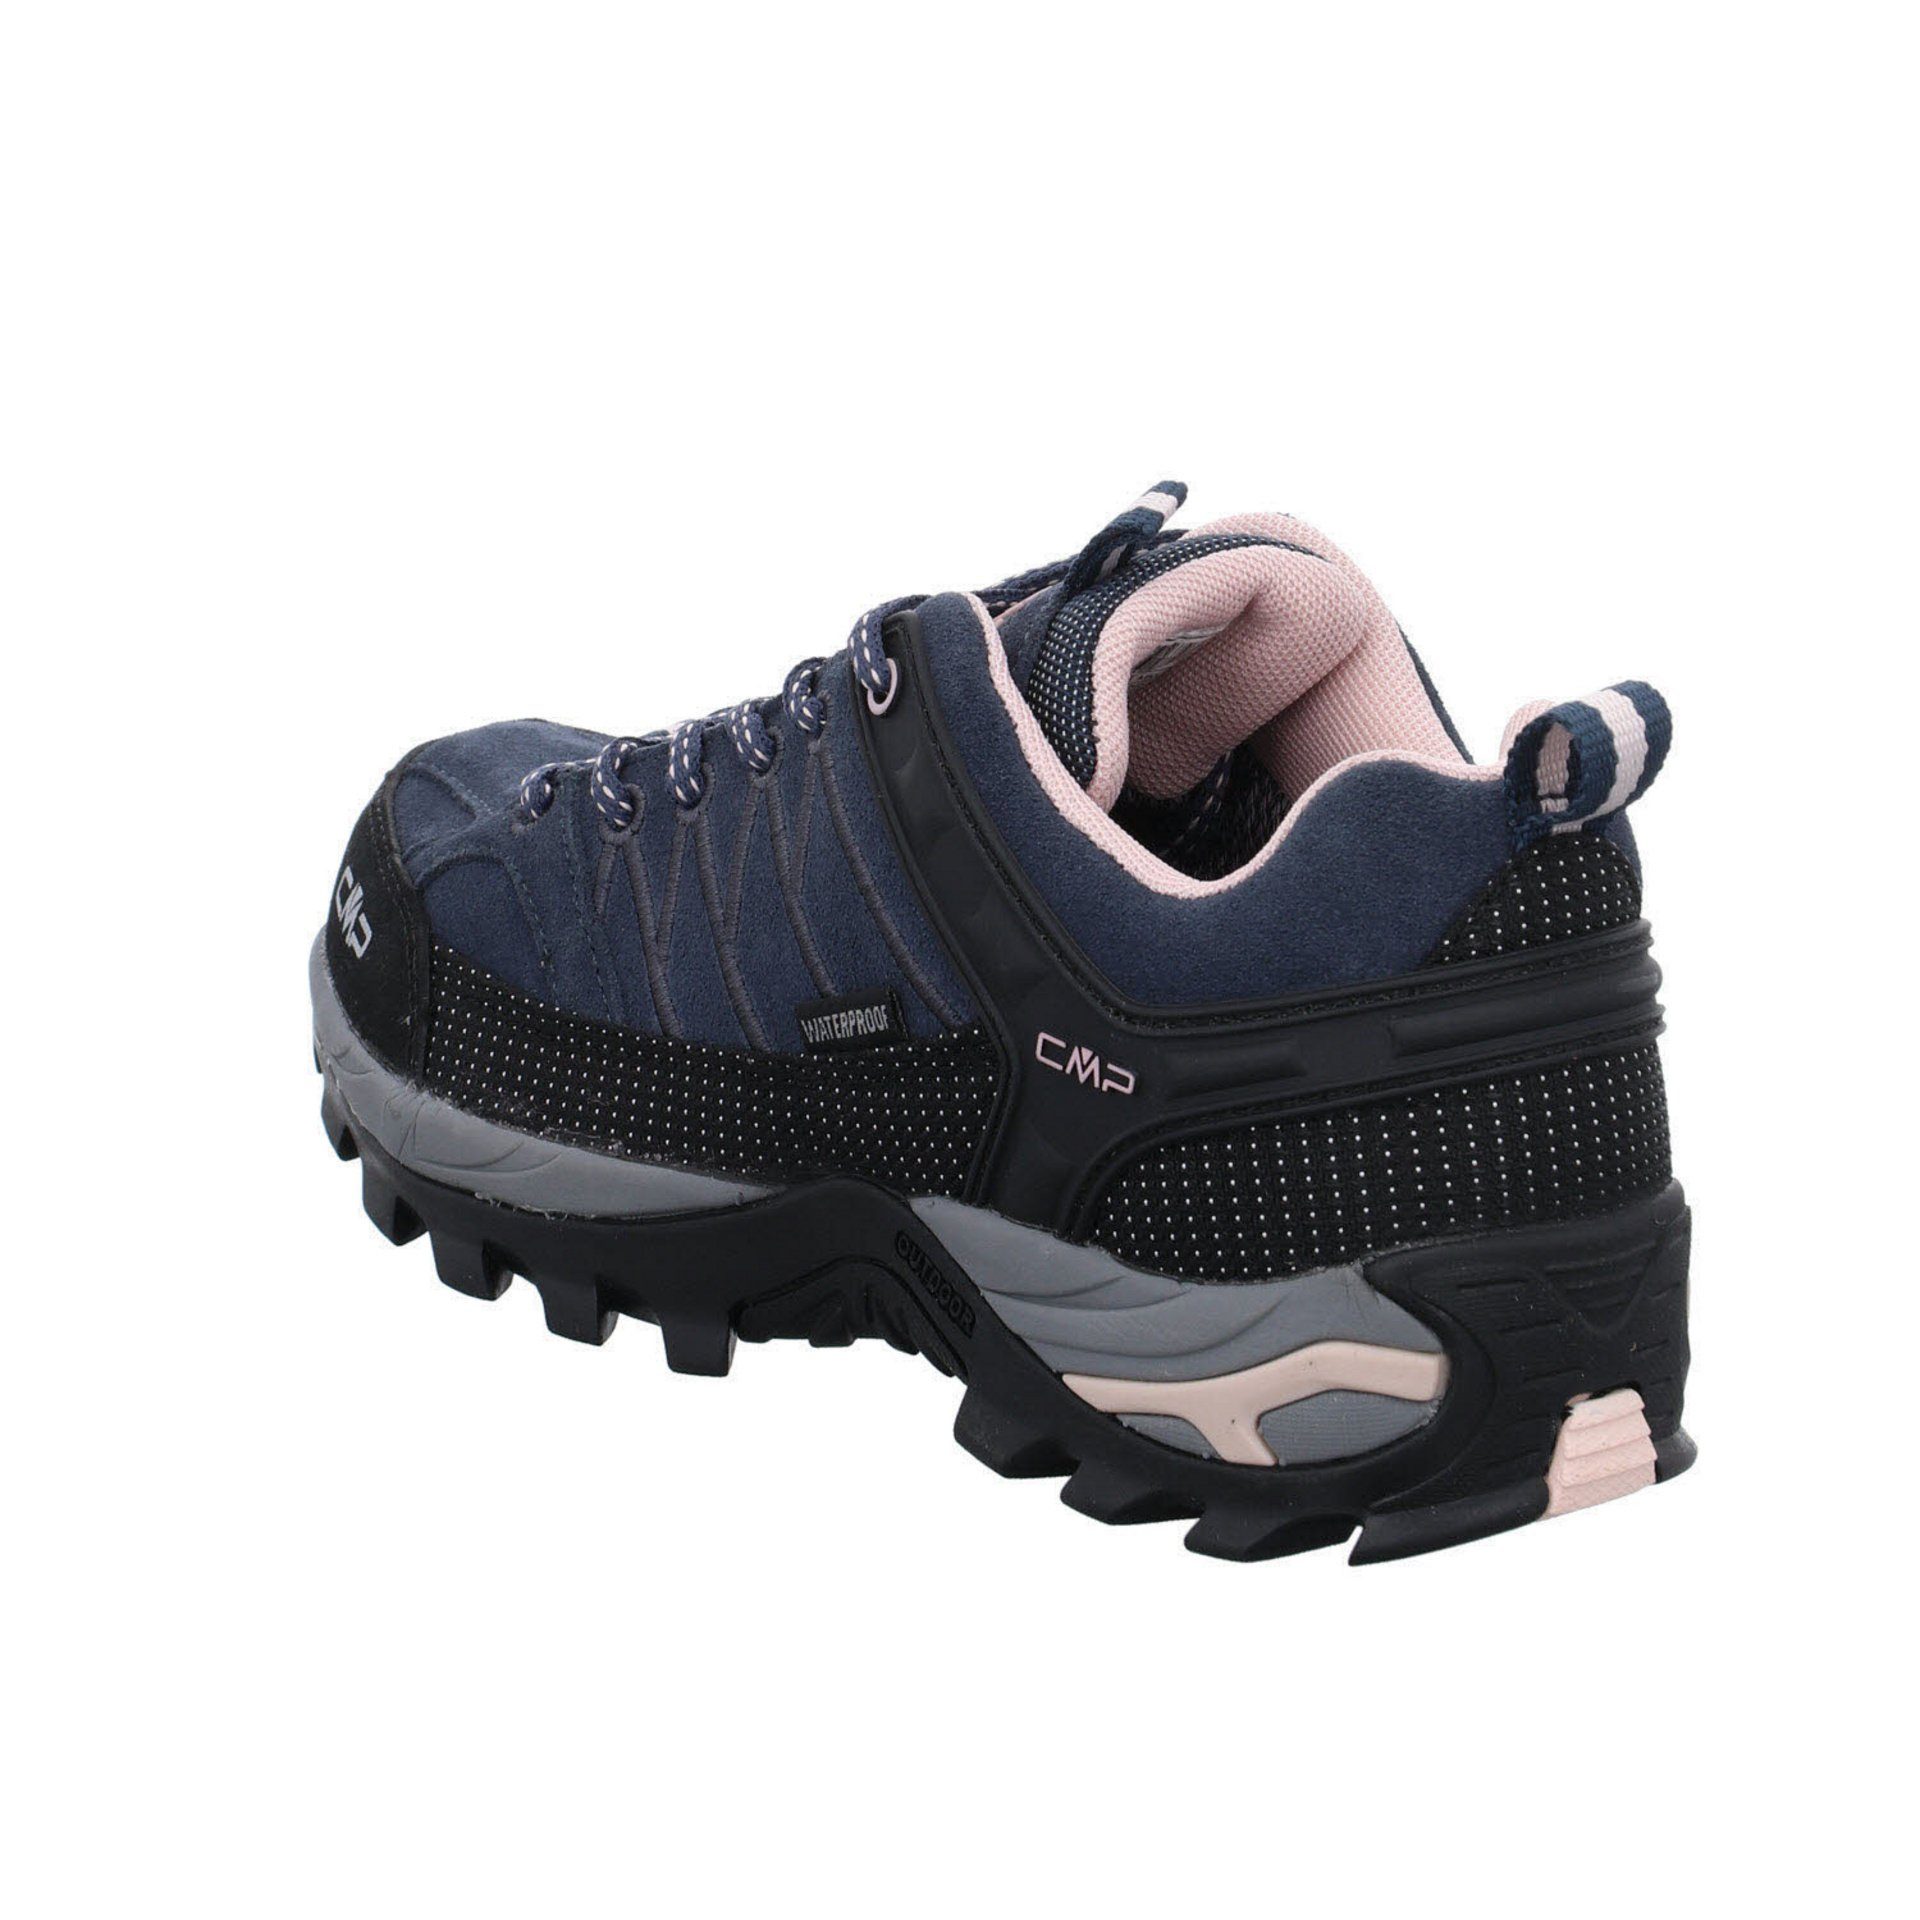 Outdoorschuh Damen anthrazit CMP Schuhe Leder-/Textilkombination (201) Outdoorschuh Outdoor Riegel Low